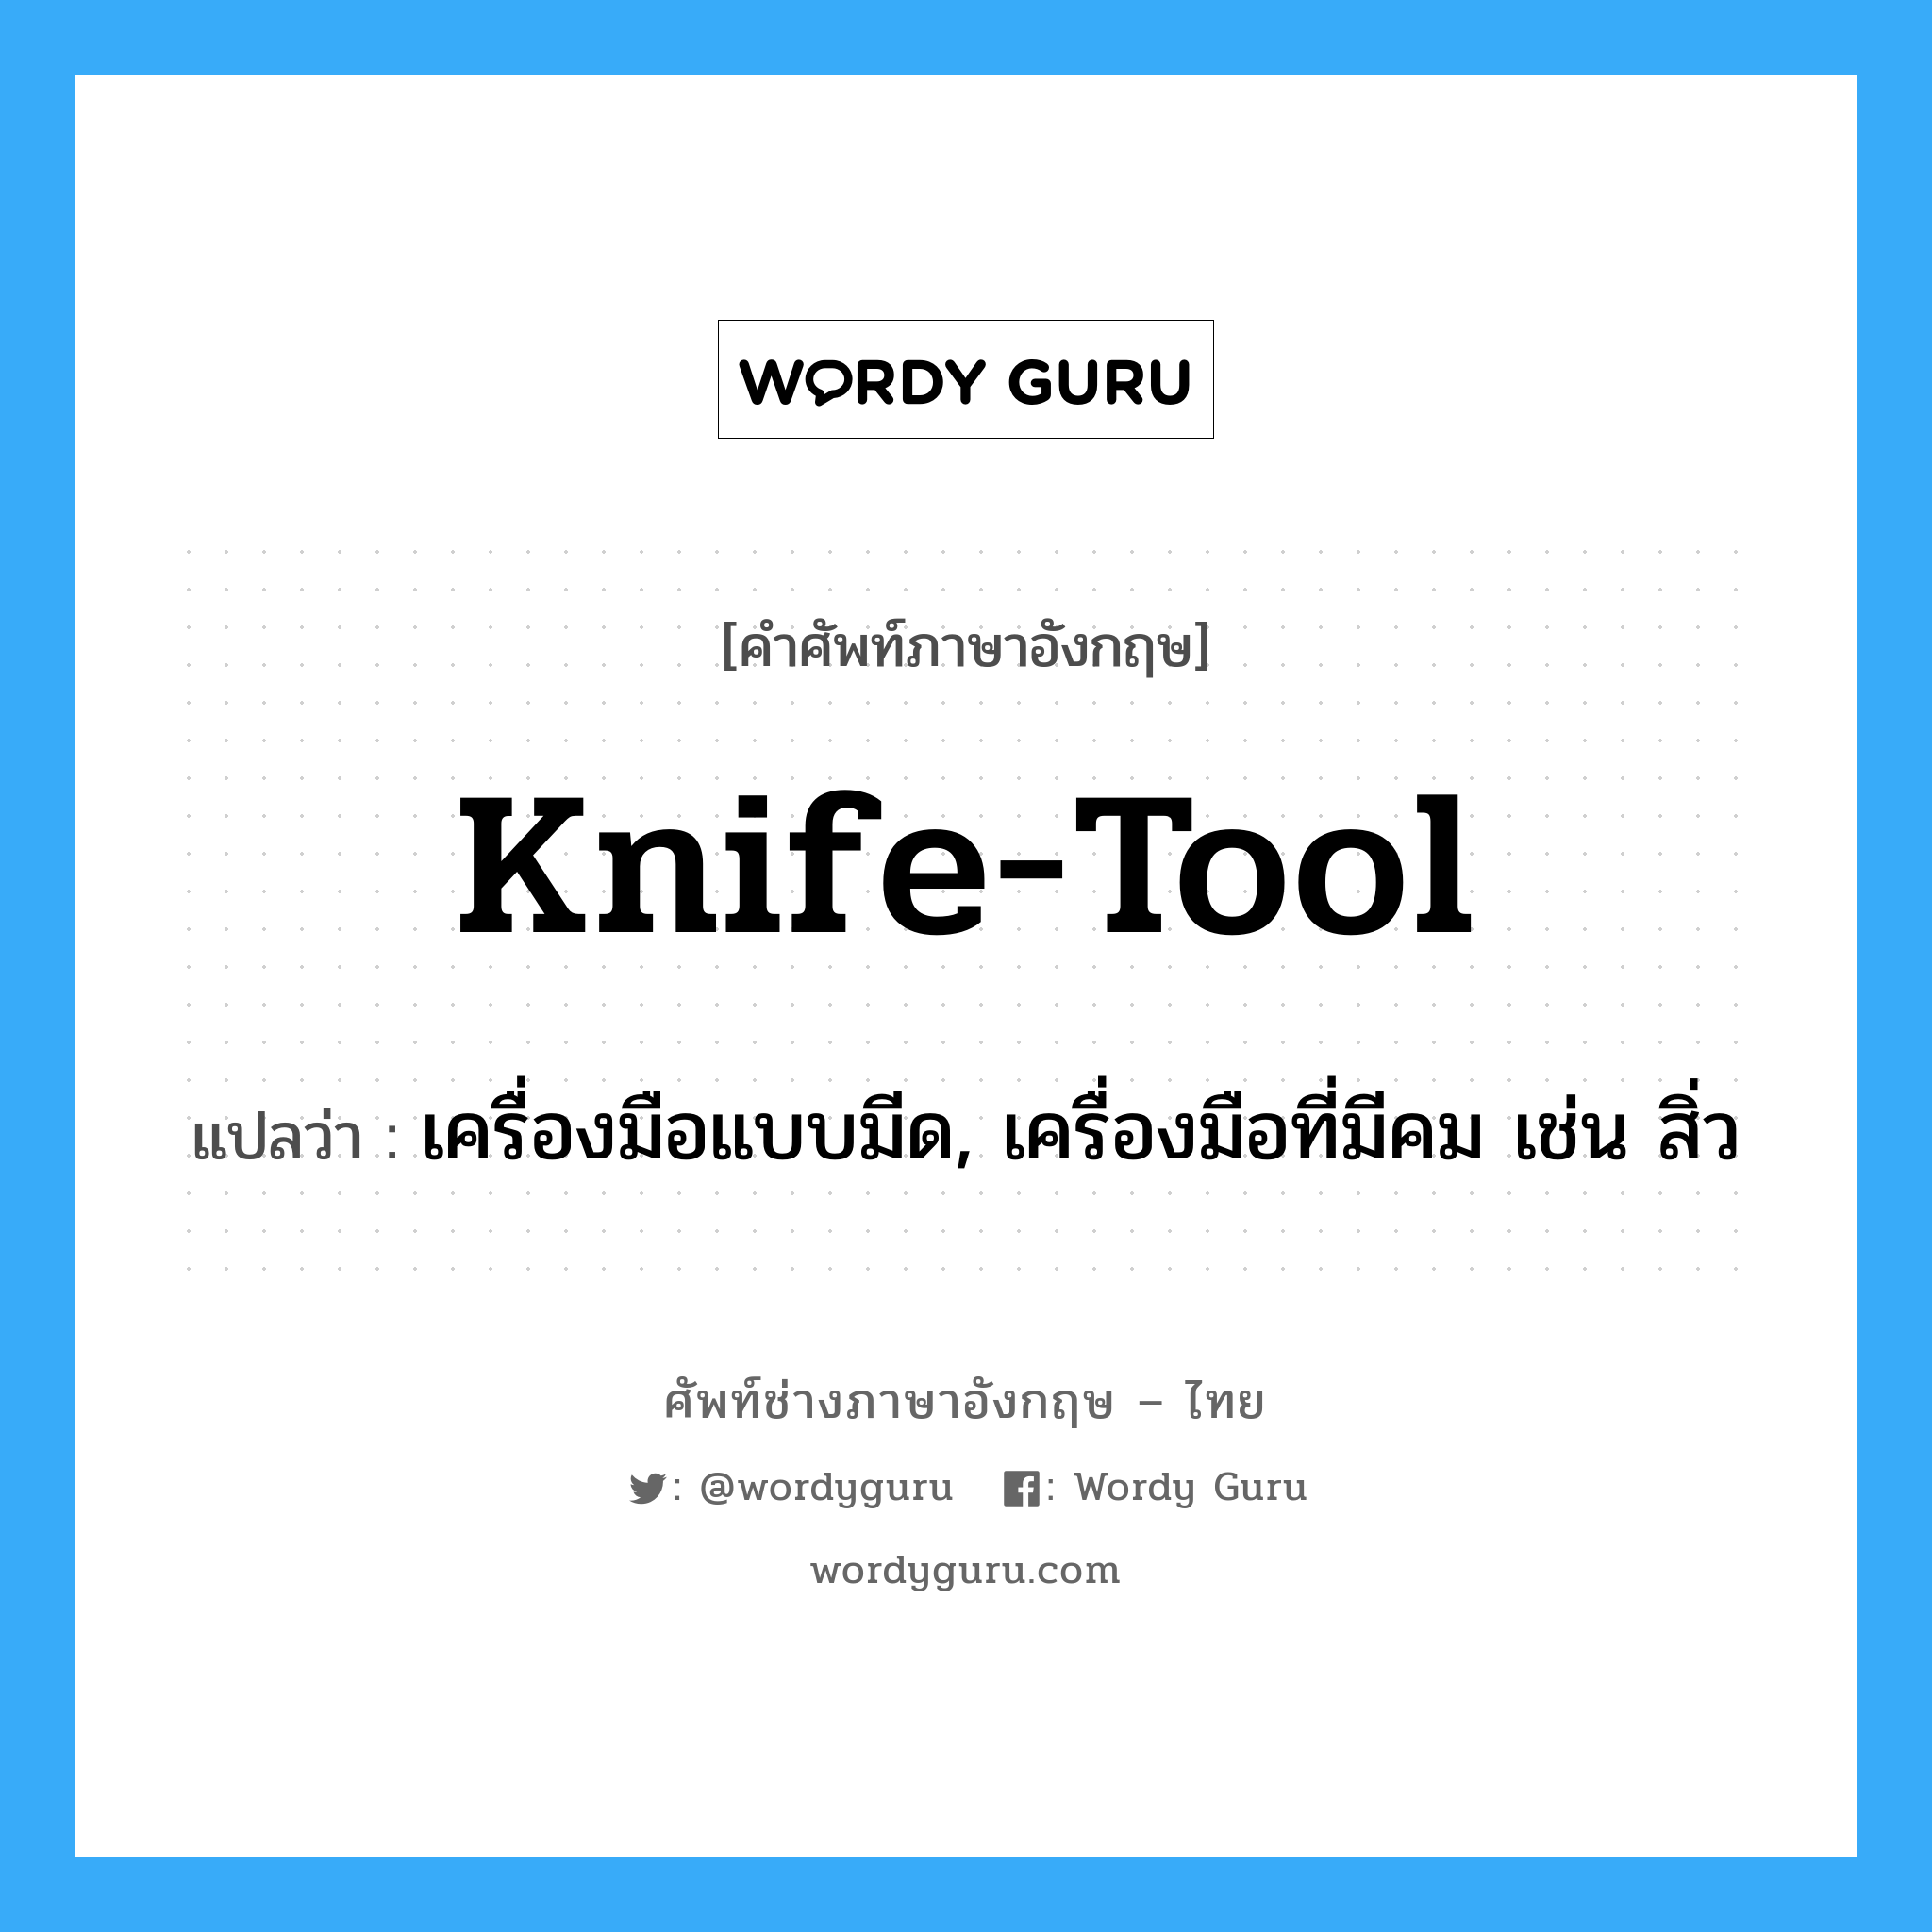 knife-tool แปลว่า?, คำศัพท์ช่างภาษาอังกฤษ - ไทย knife-tool คำศัพท์ภาษาอังกฤษ knife-tool แปลว่า เครื่องมือแบบมีด, เครื่องมือที่มีคม เช่น สิ่ว